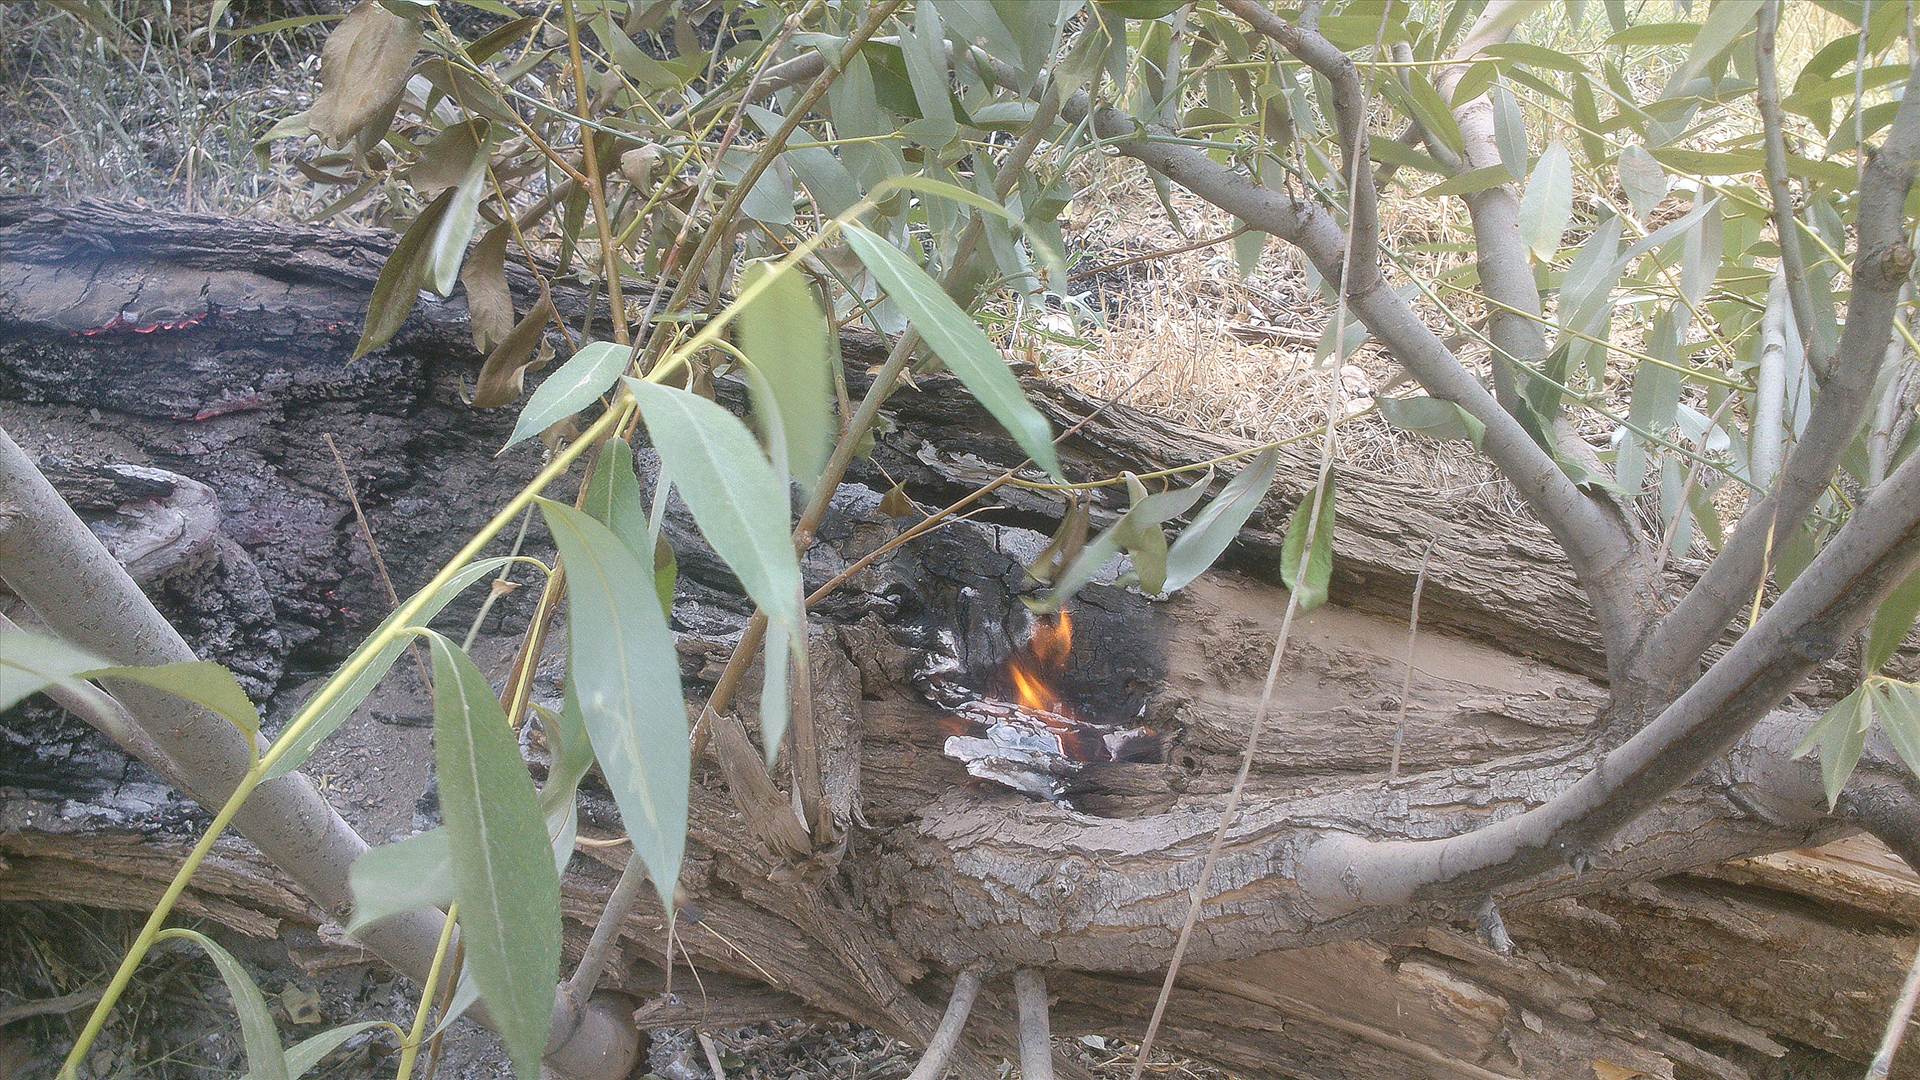 بي مهري در به آتش کشيدن درختان کوهسنگ توسط مهمانان طبيعت سنگان عده اي براي لحظه اي سرگرمي طبيعت را براي هميشه از بين ميبرند94/4/30 این عکس توسط محسن دهباشی گرفته شده by mohsen dehbashi